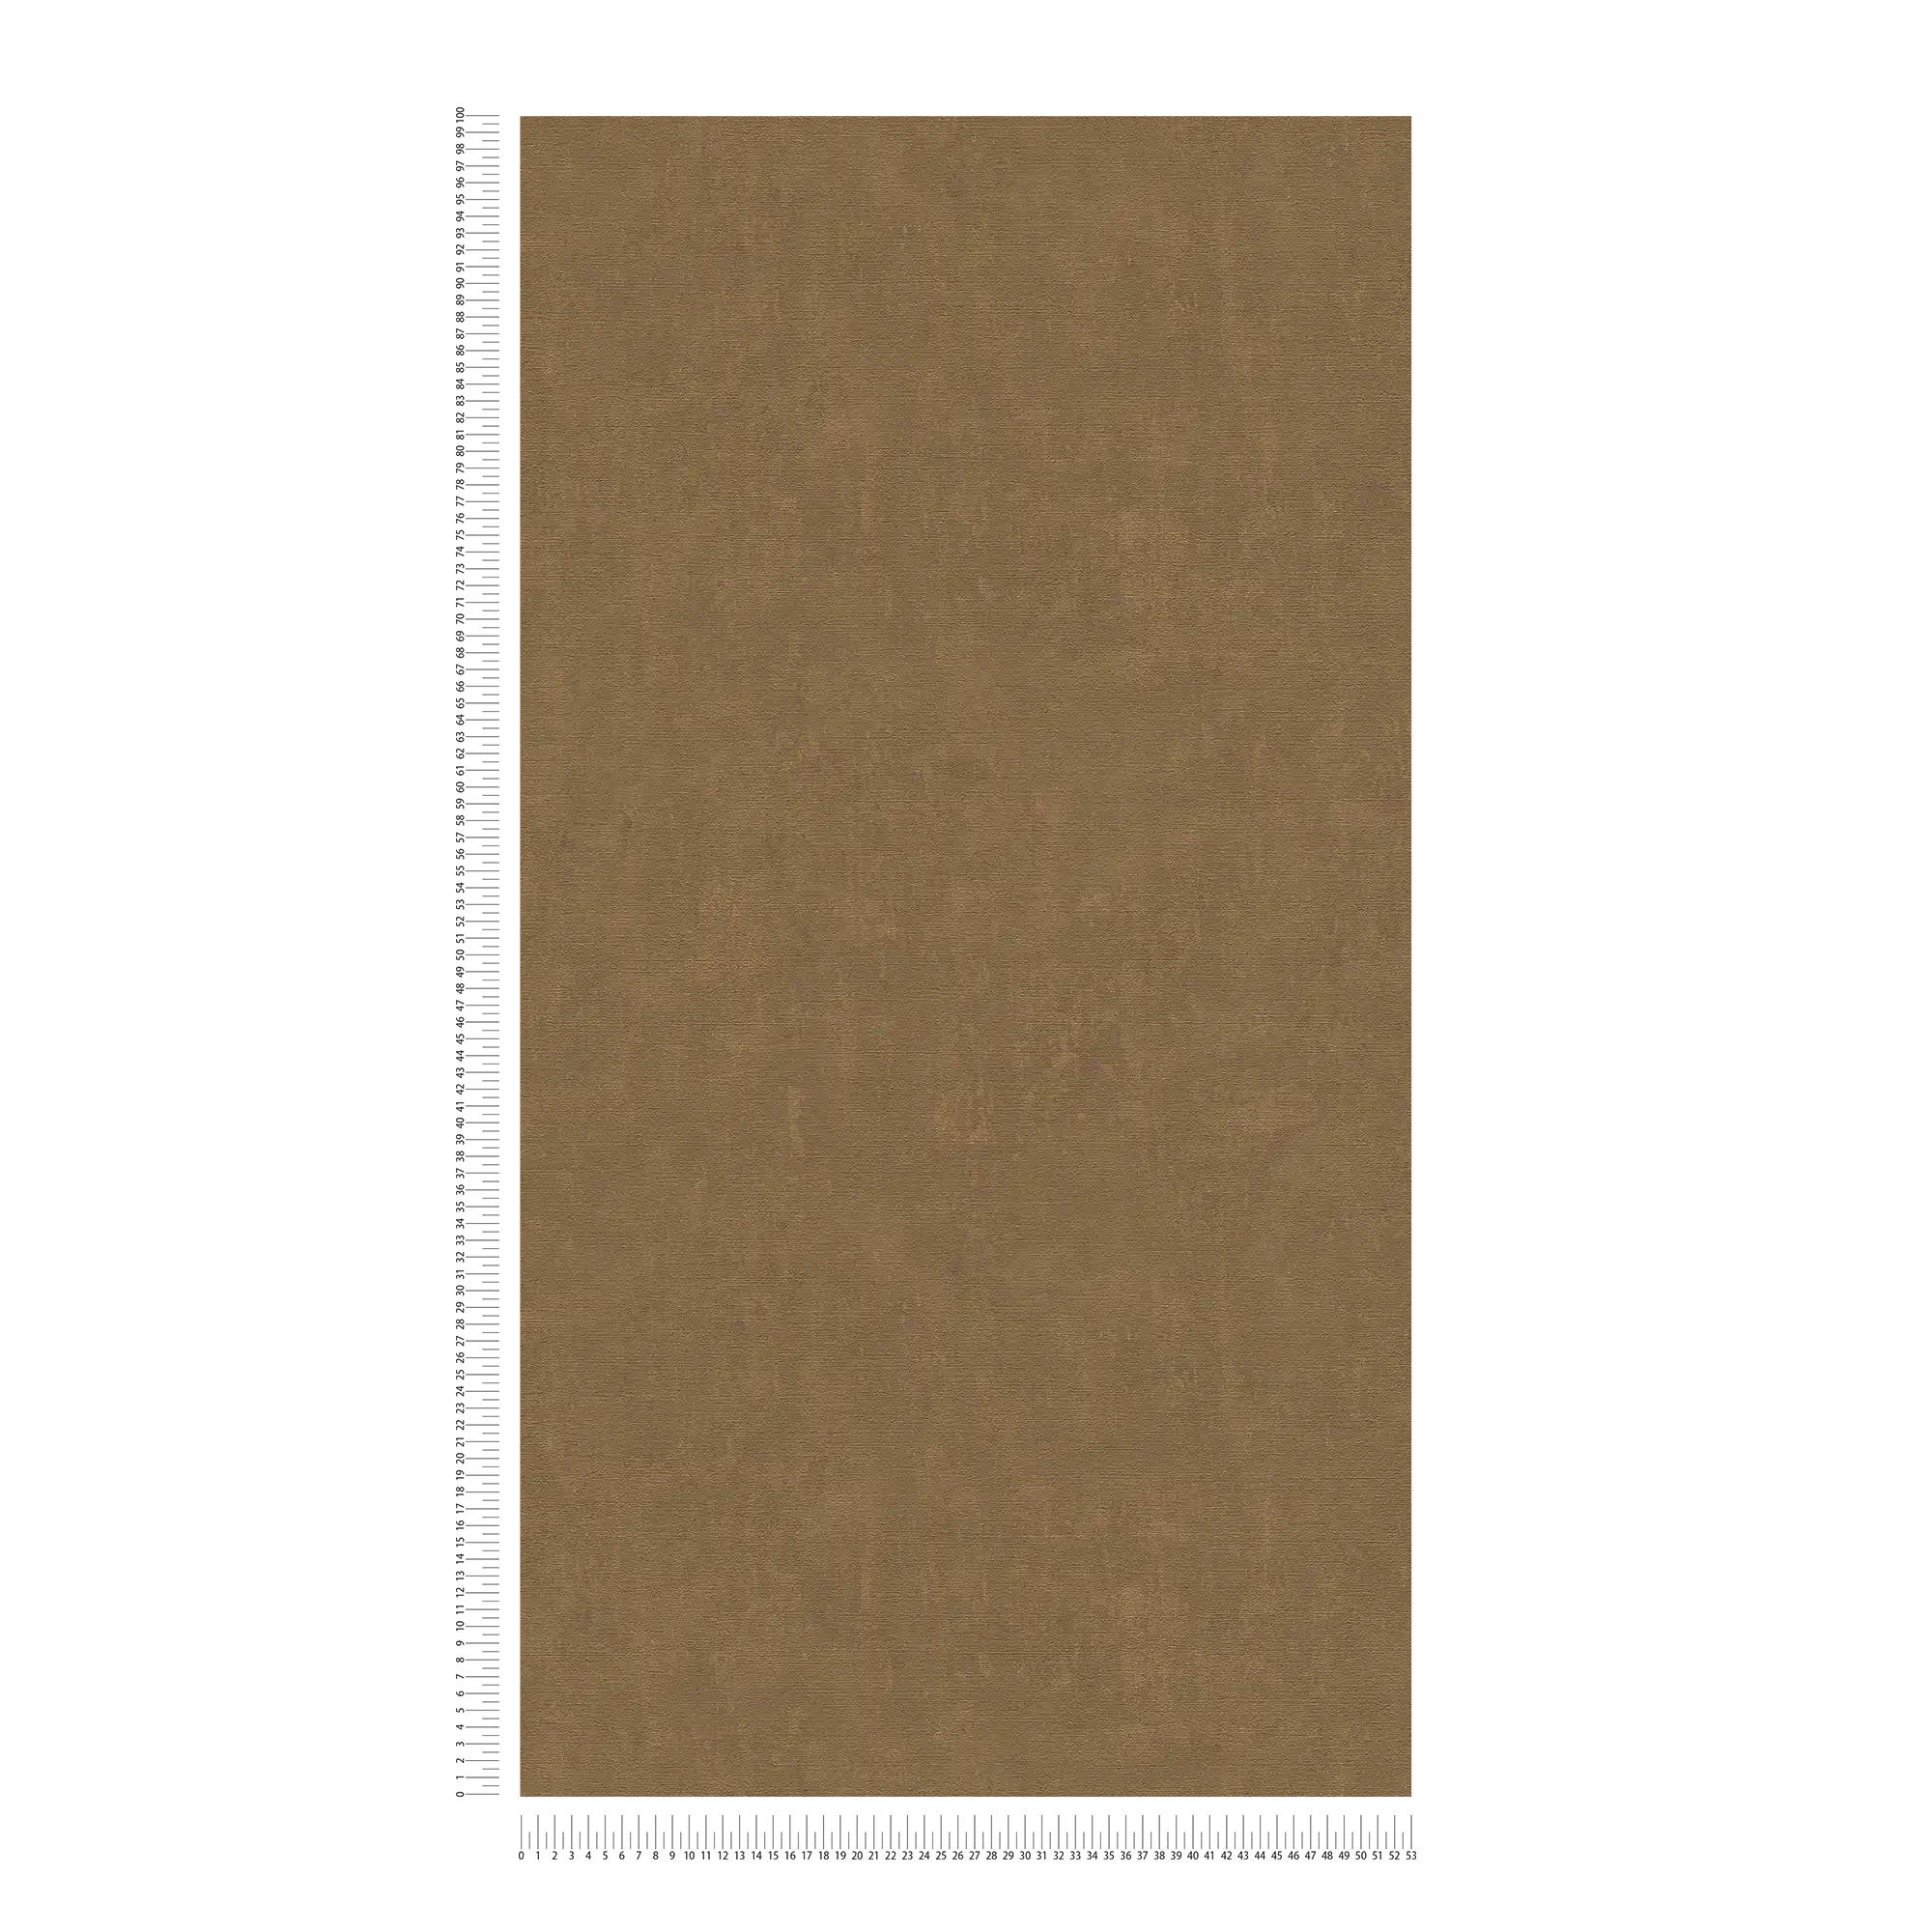             carta da parati bronzo screziato con aspetto intonaco in look usato - marrone, metallico
        